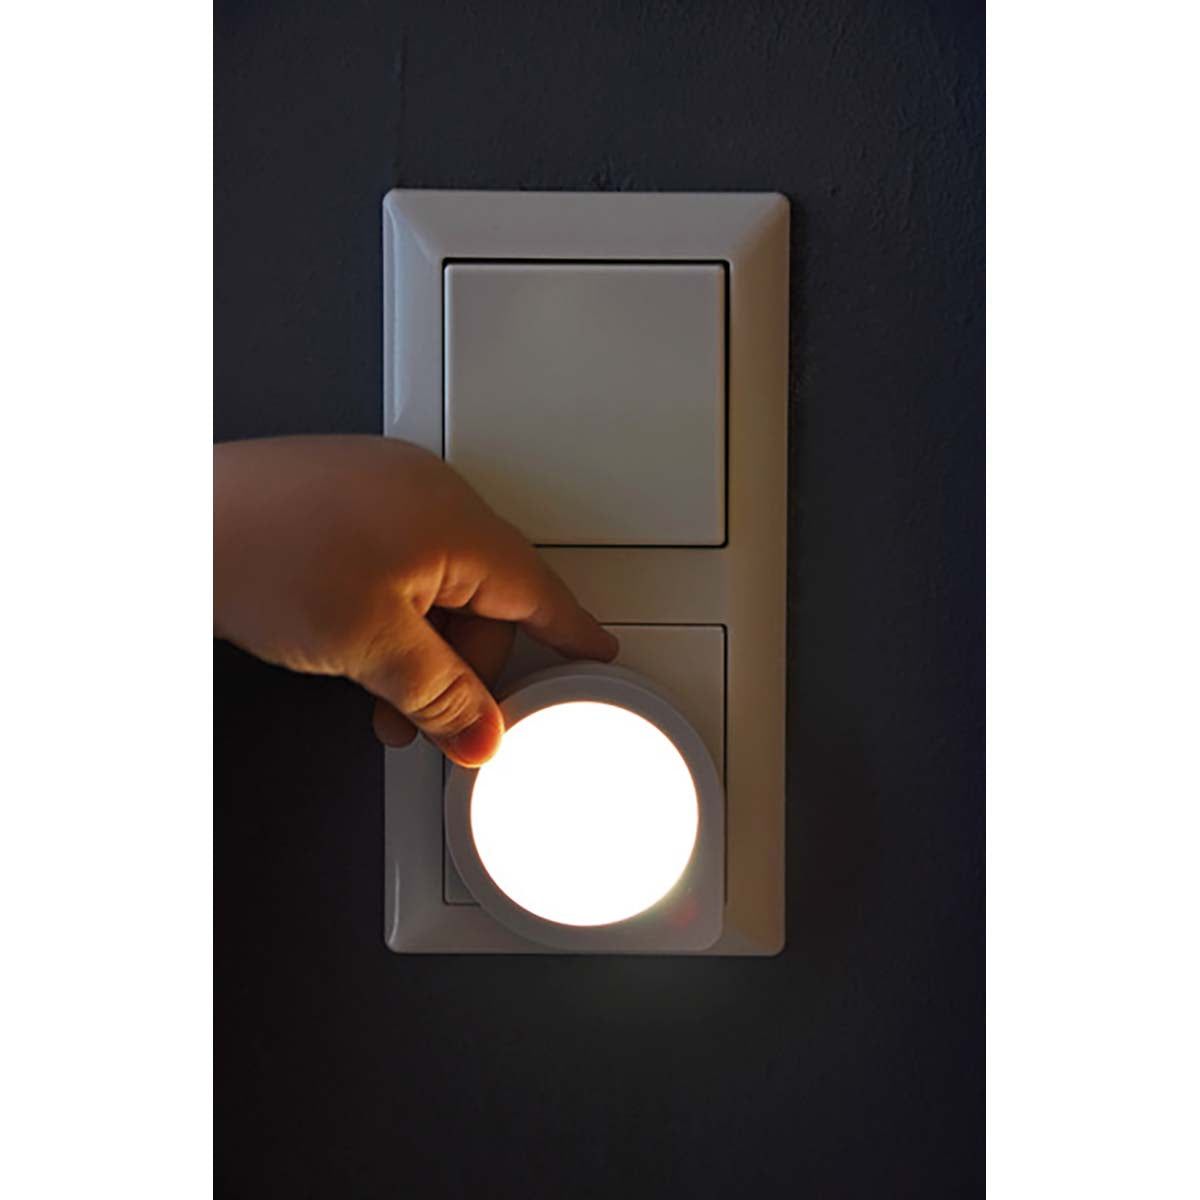 LED Nachtlicht mit Dämmerungssensor / Nachtlicht Steckdose (Sanftes und unaufdringliches Steckdosenlicht mit extrem geringem Stromverbrauch)